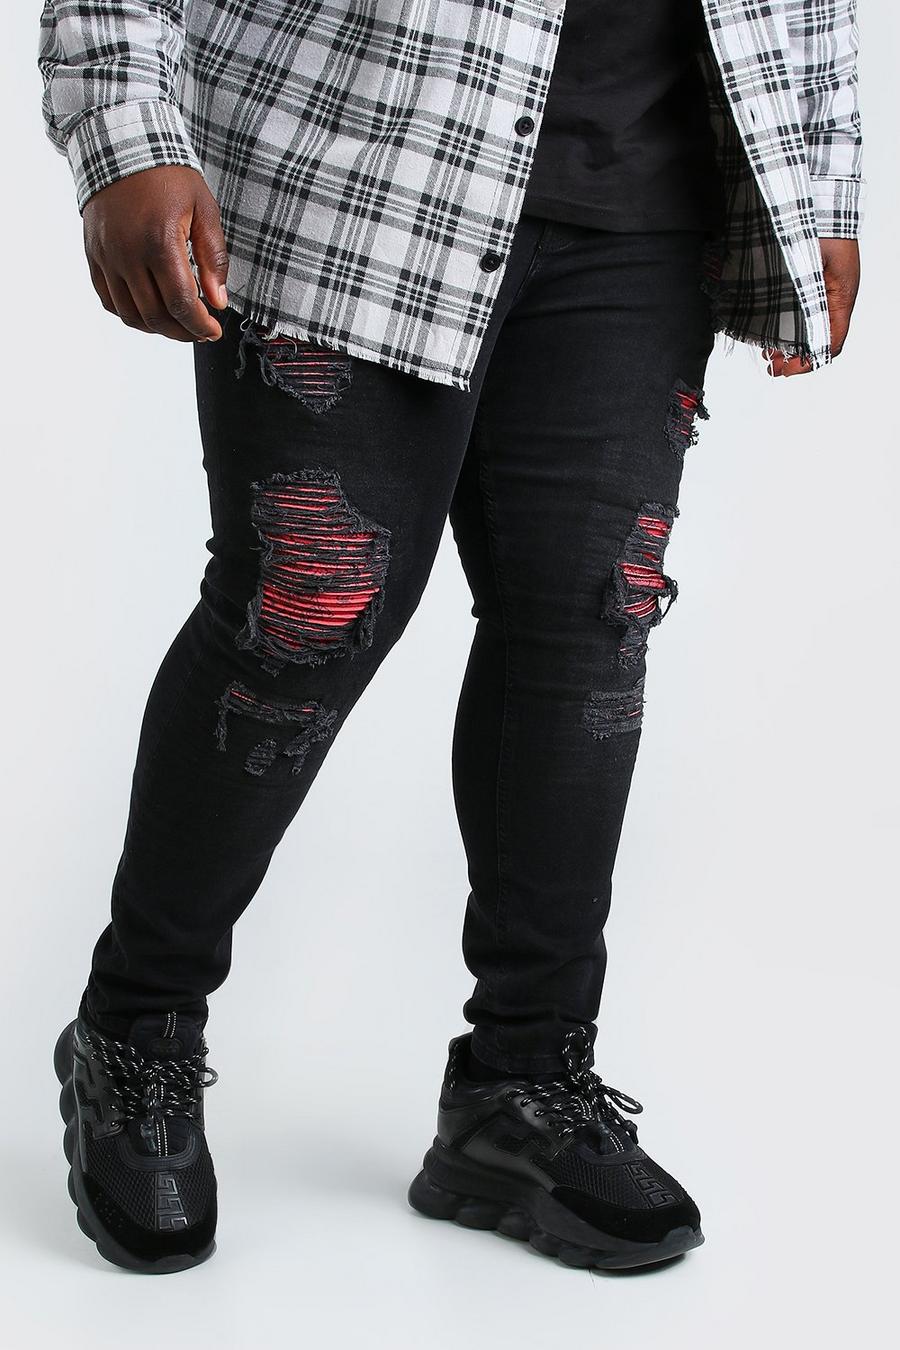 שחור סופר סקיני ג'ינס עם קרעים ובנדנה לגברים גדולים וגבוהים image number 1